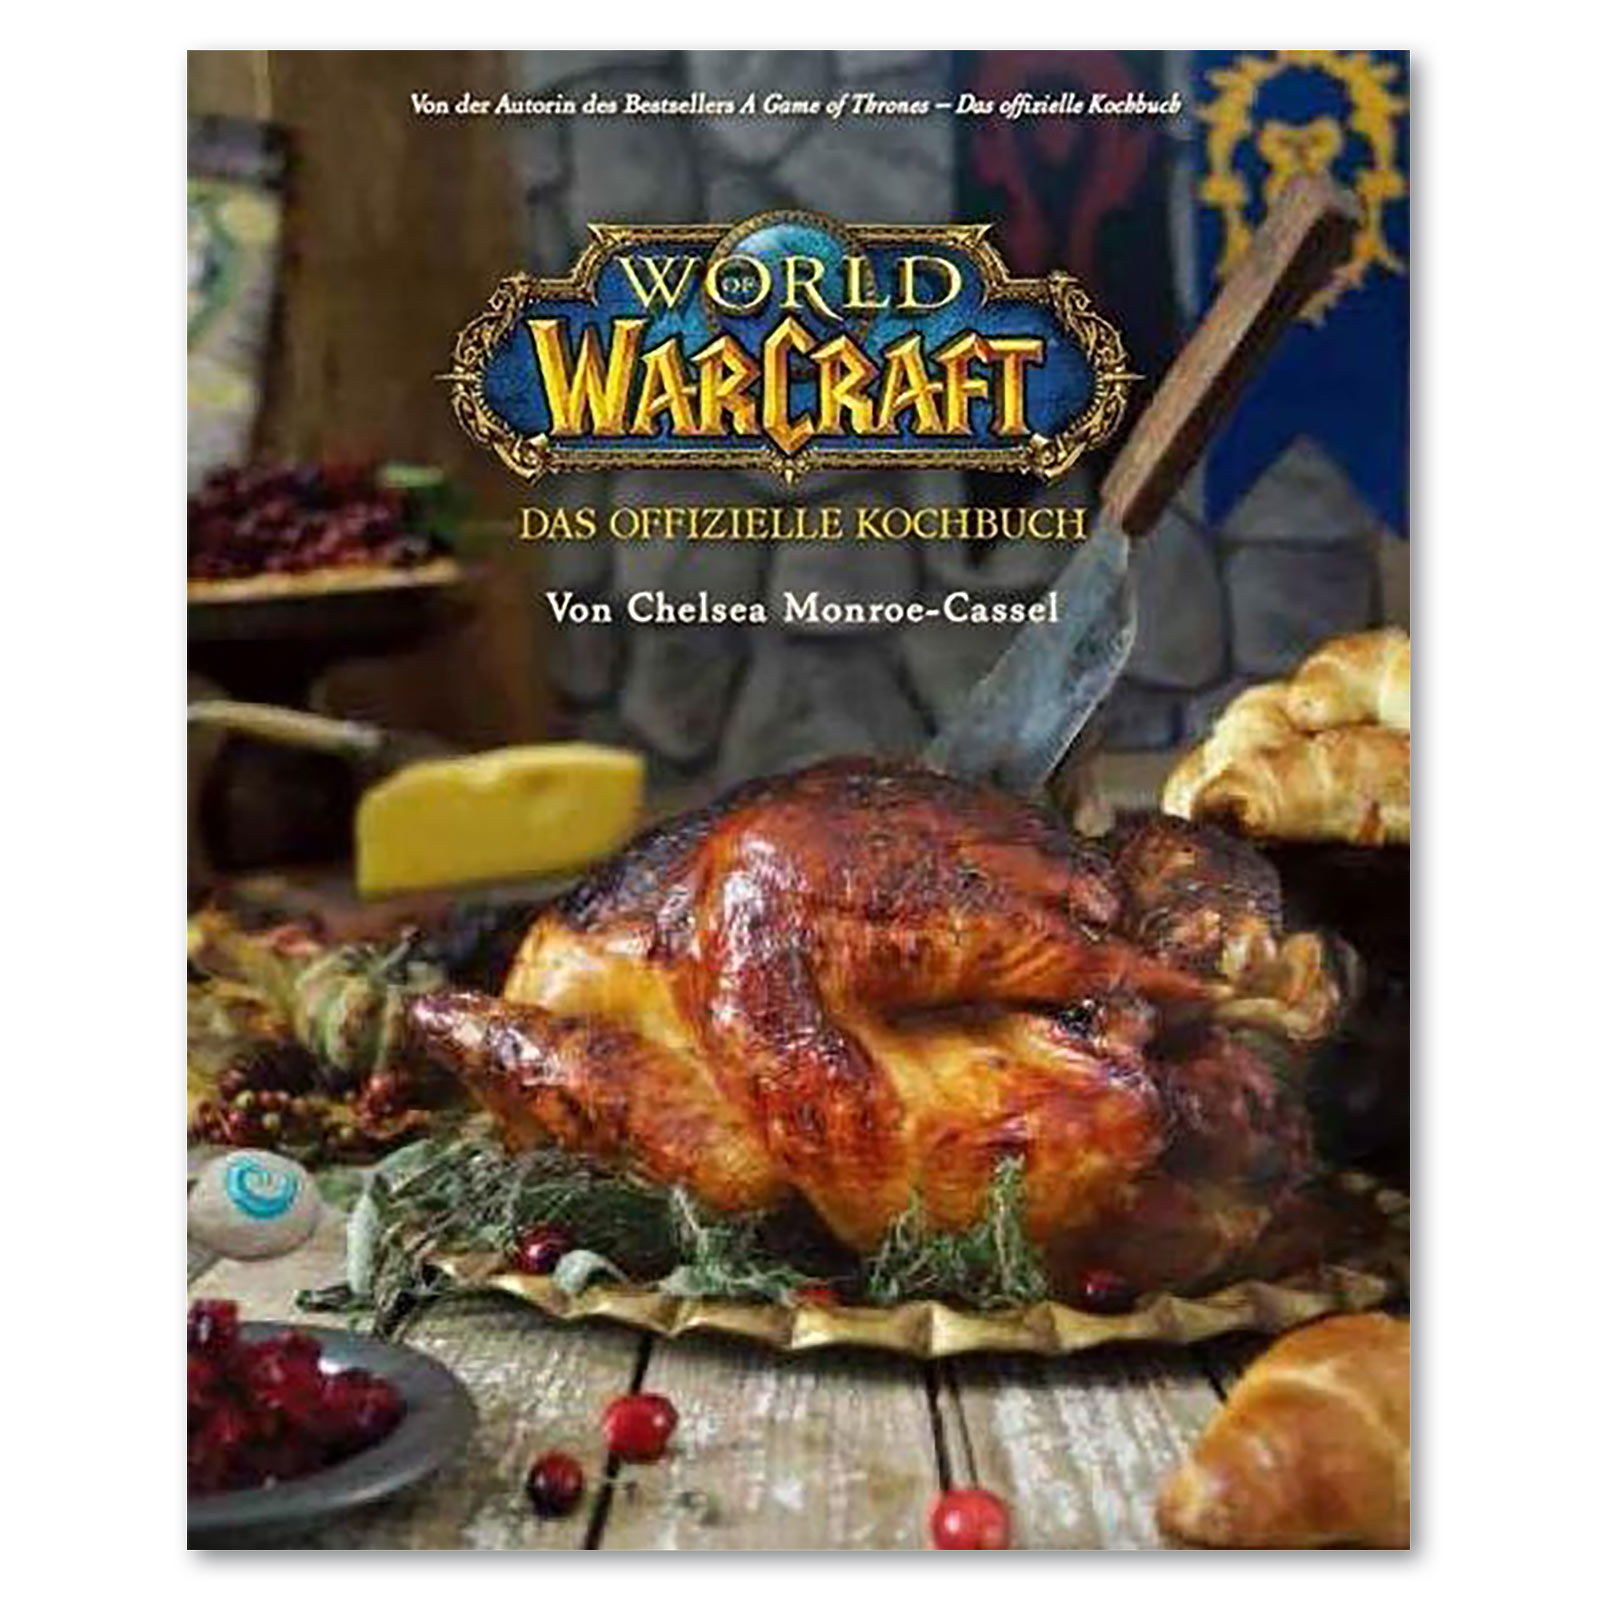 World of Warcraft - Das offizielle Kochbuch